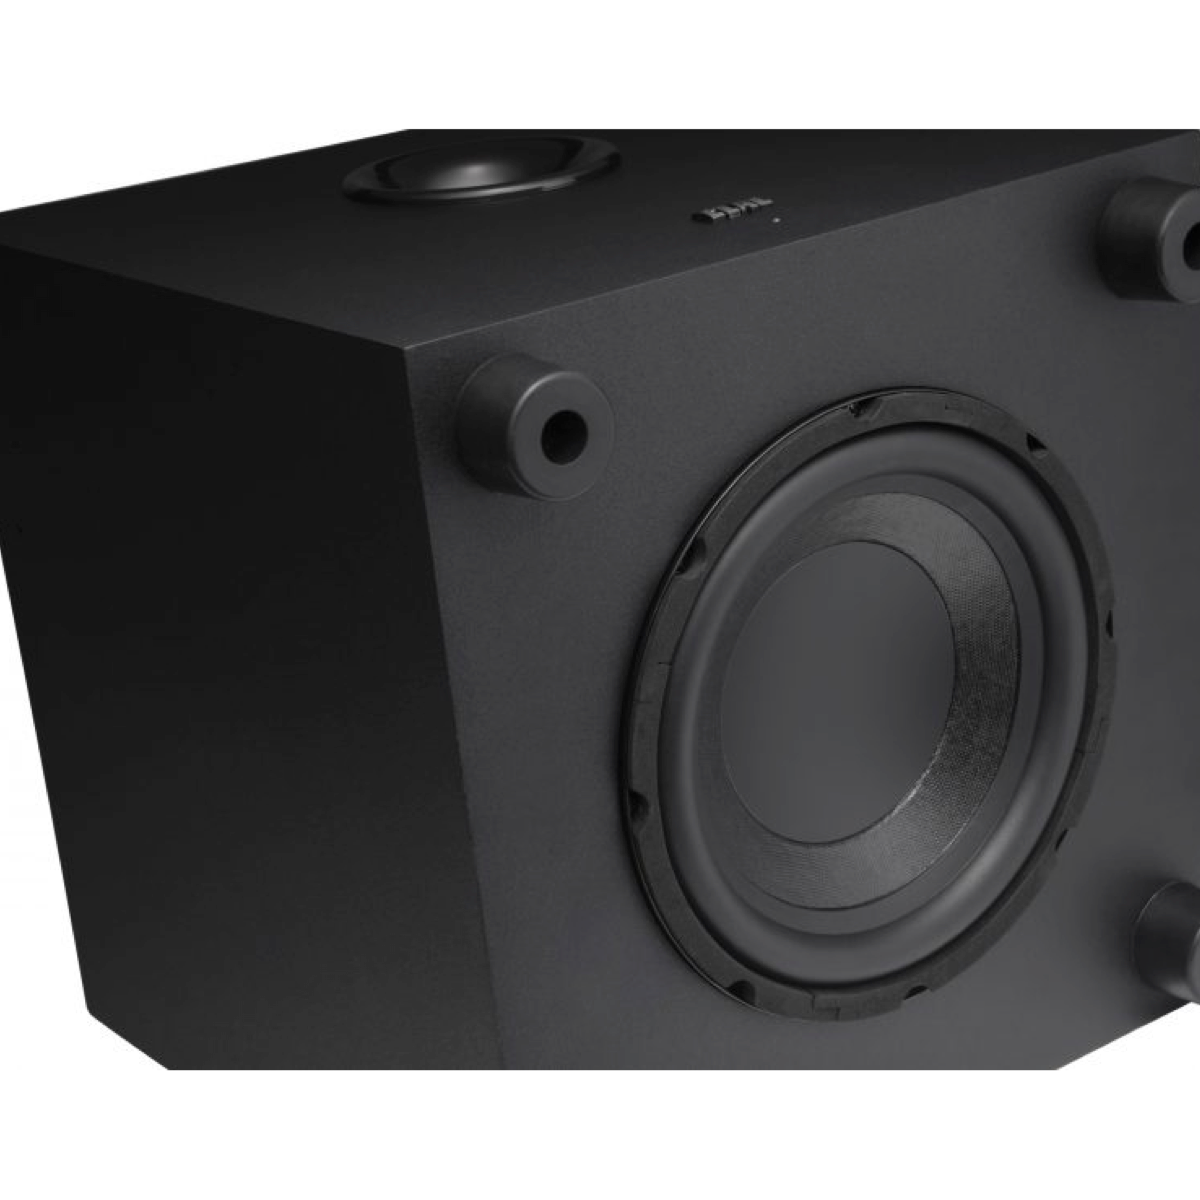 ELAC Cinema 5 - 5.1 Channel Speaker System - AVStore